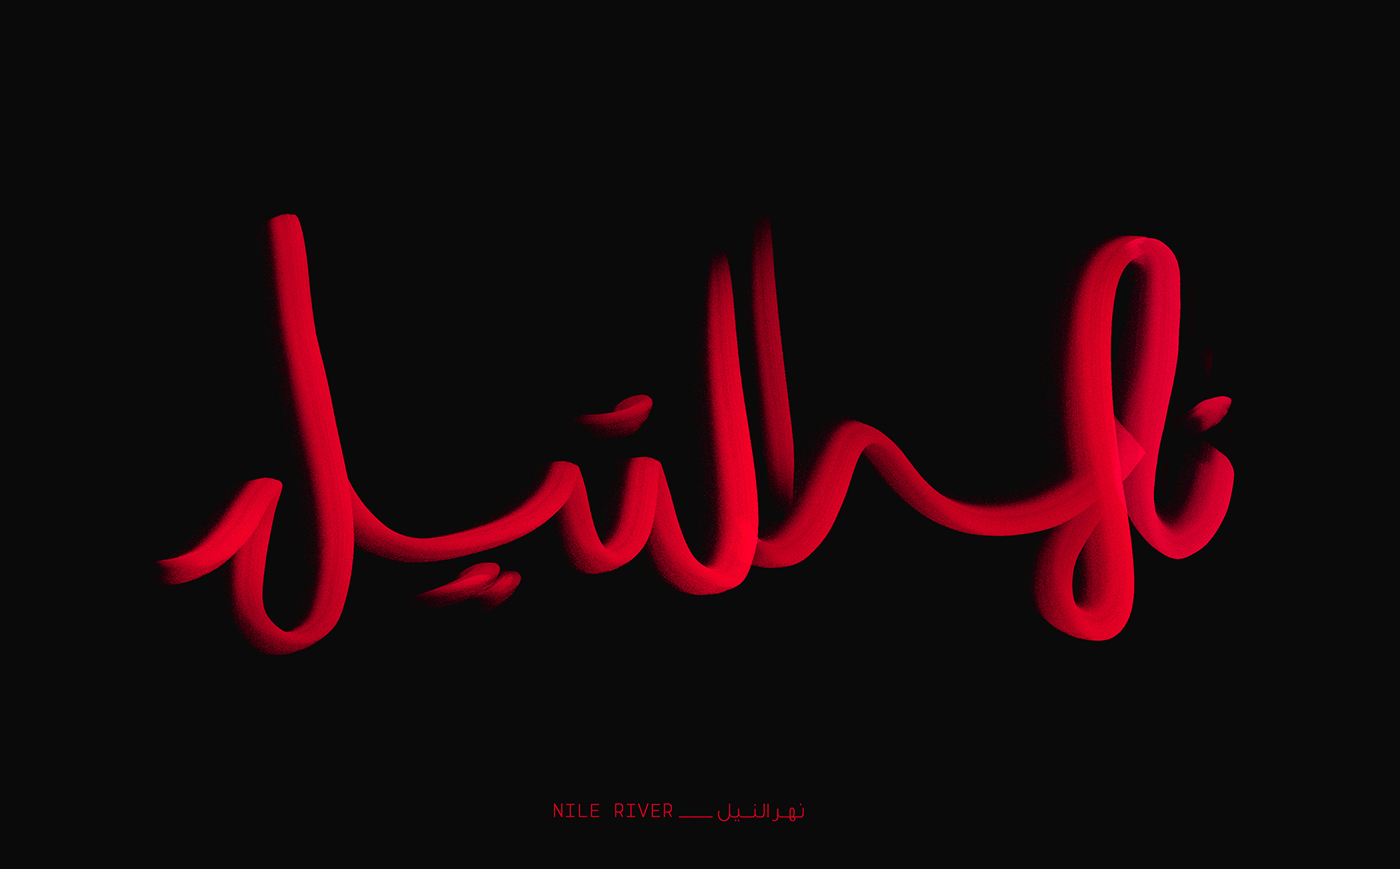 arabic Calligraphy   hibrayer type typography   حبراير عربي